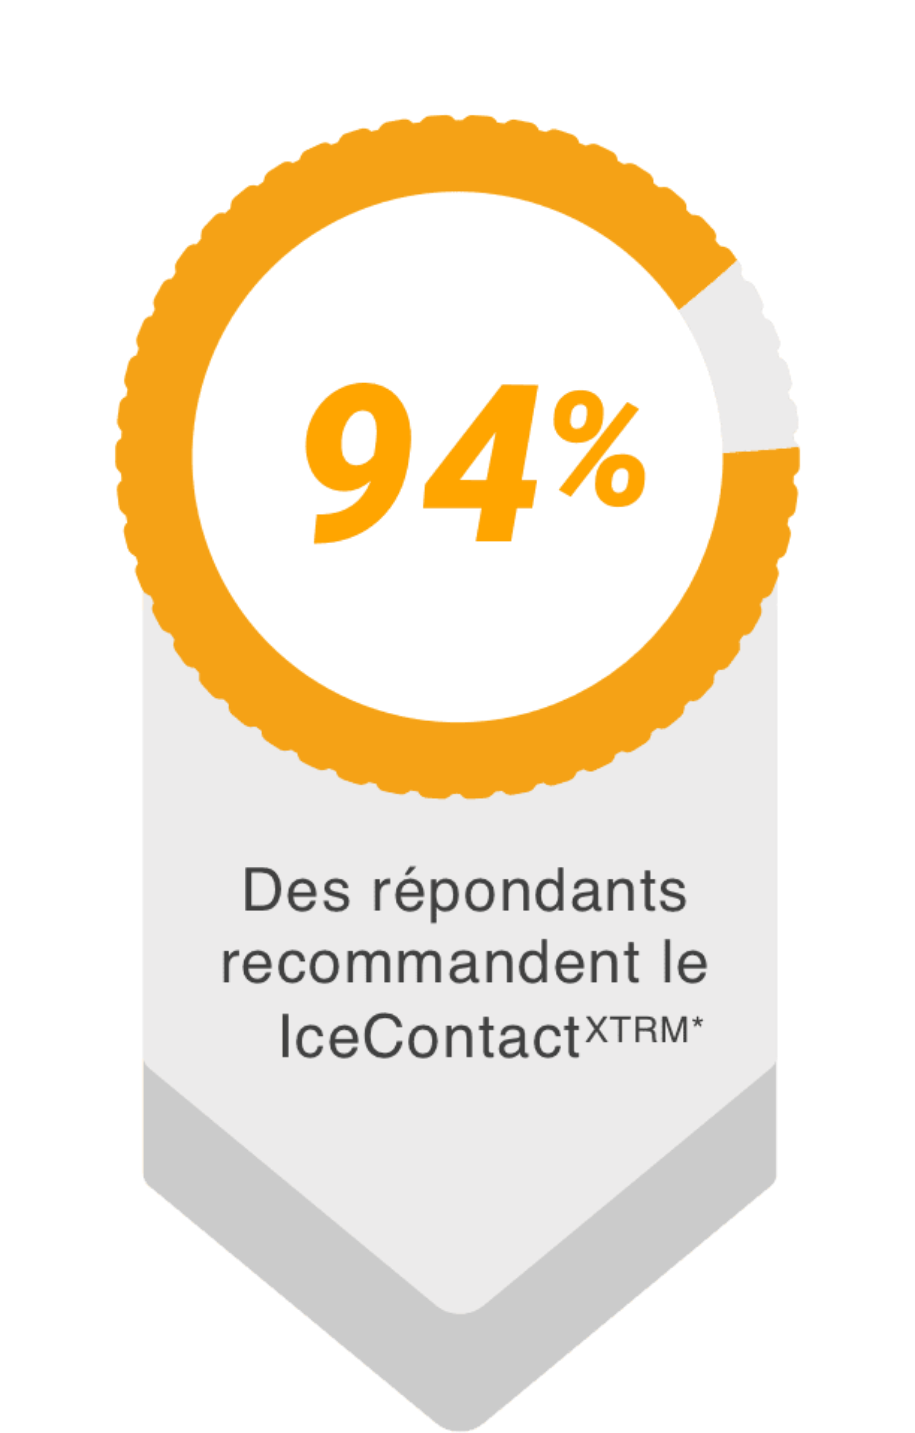 94% recommandent le IceContact XTRM par Pneus Continental